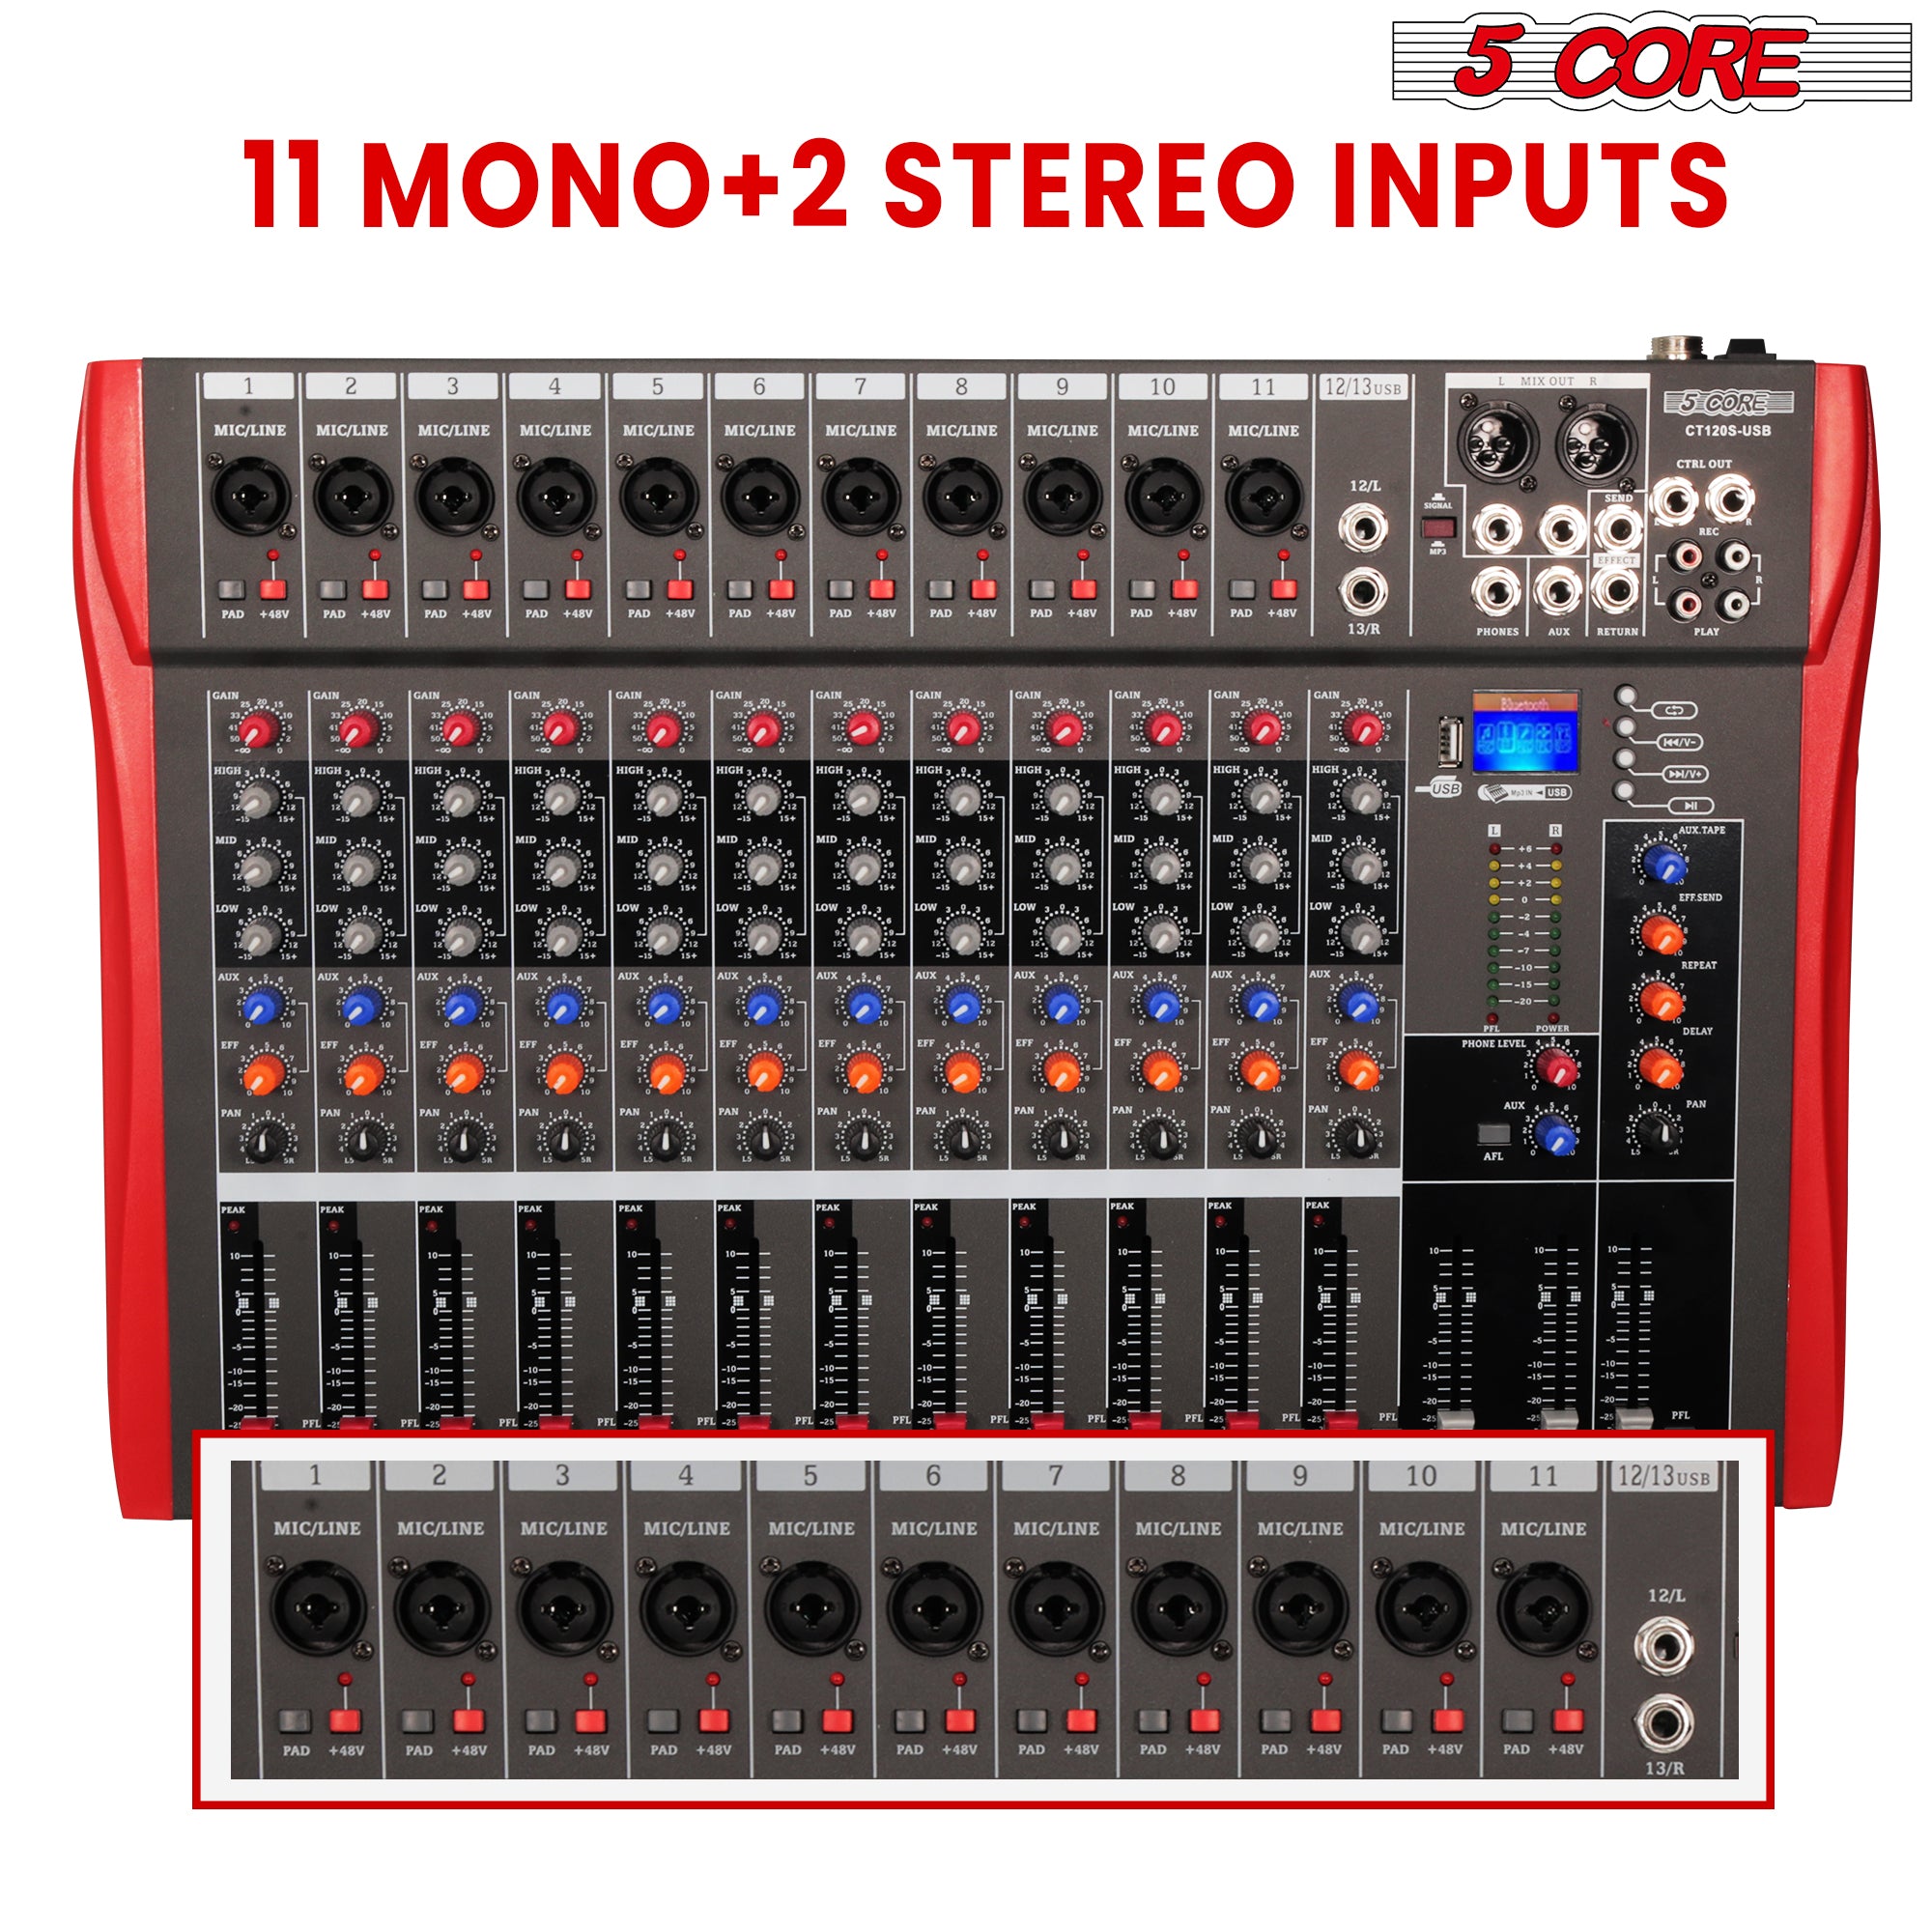 11 Mono + 2 Stereo Inputs.